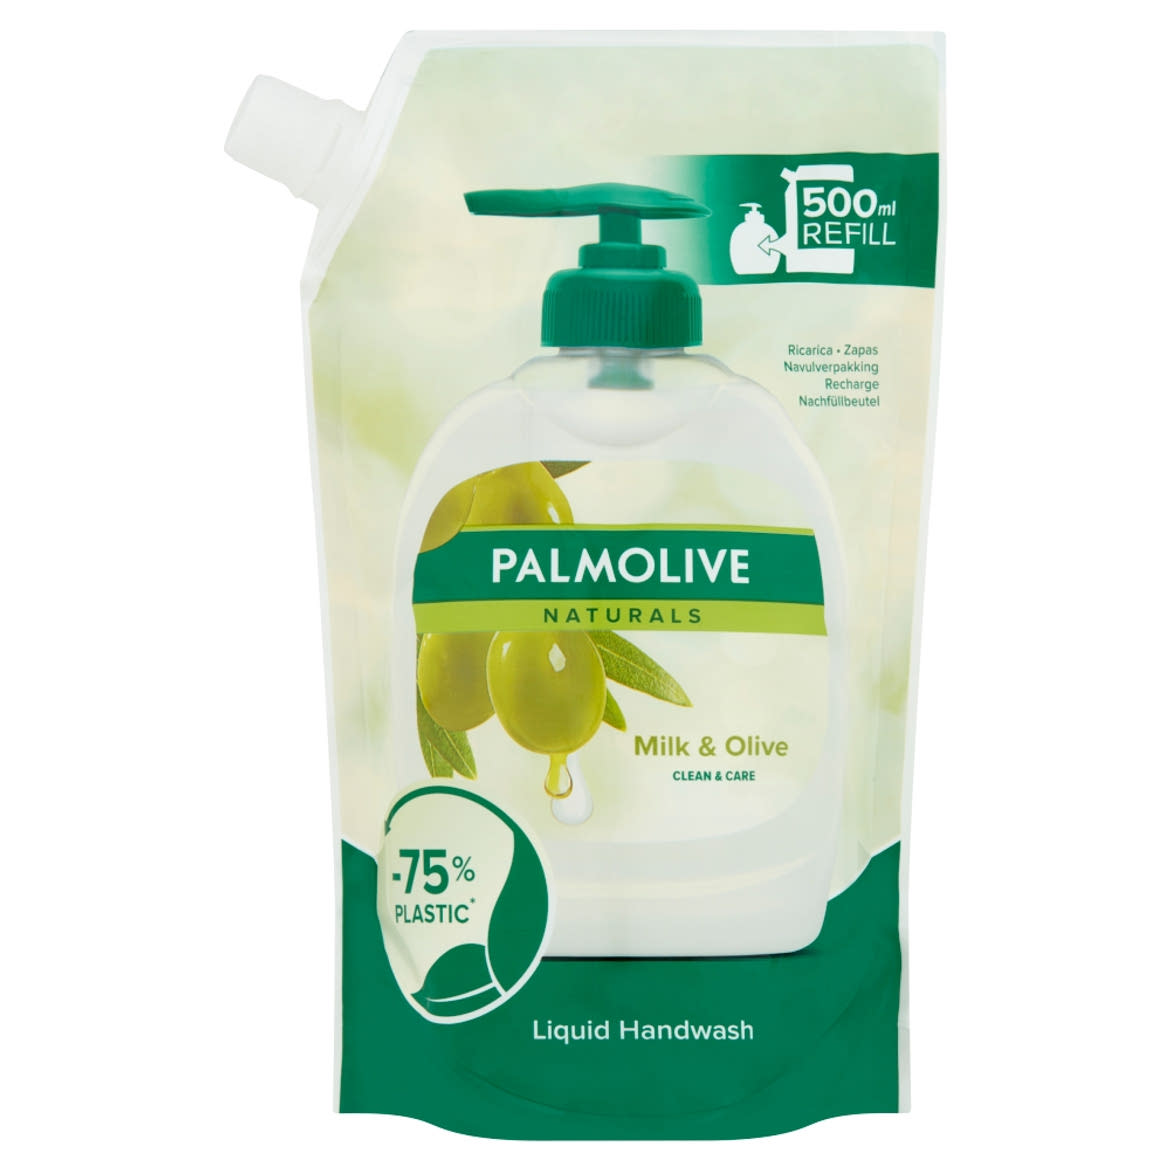 Palmolive Naturals Milk & Olive folyékony szappan utántöltő